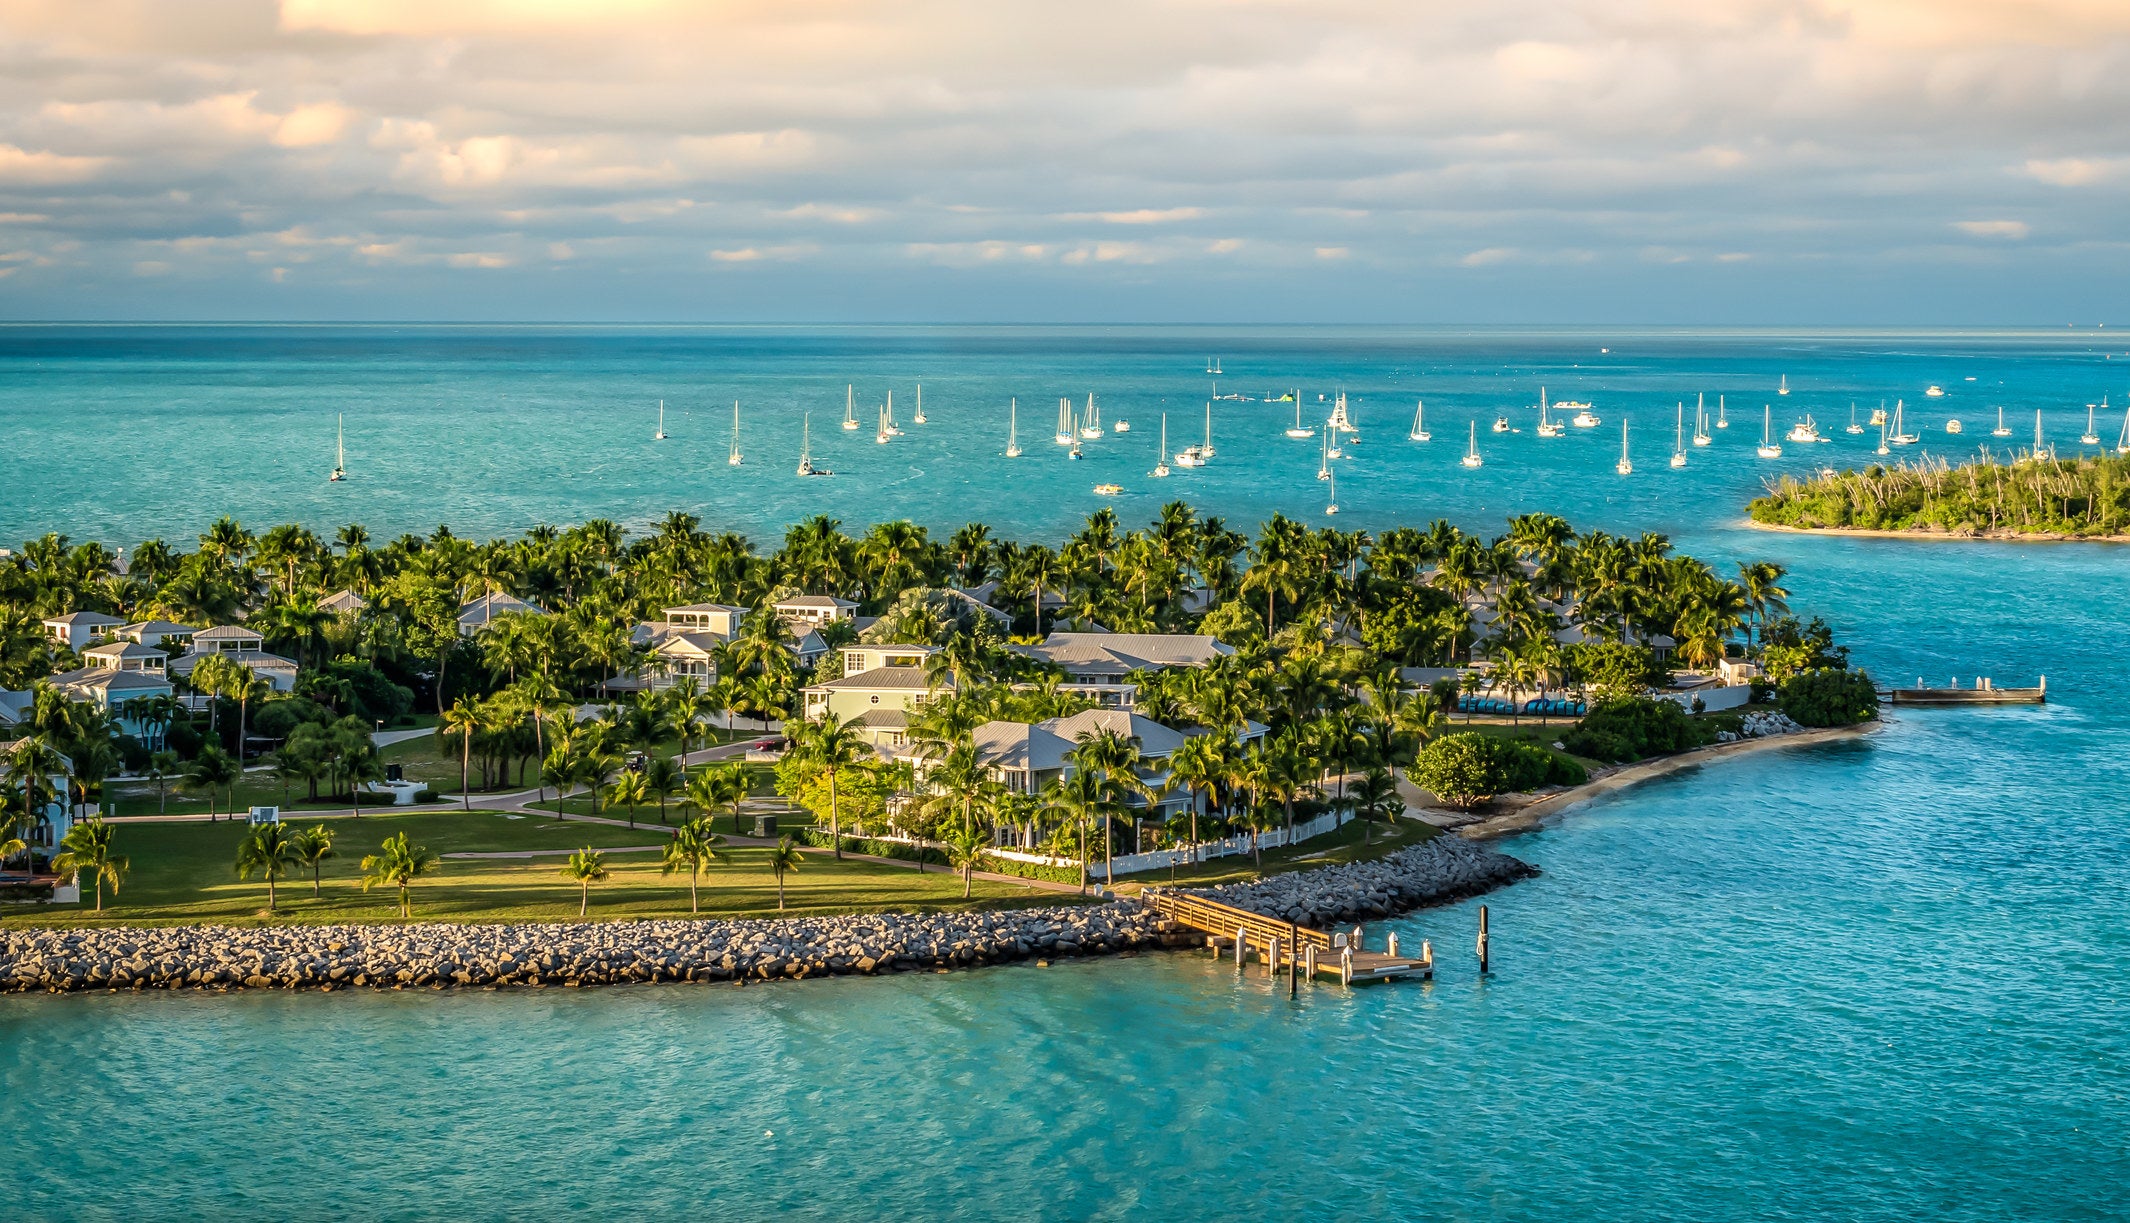 Island of Sunset Key in Key West, Florida